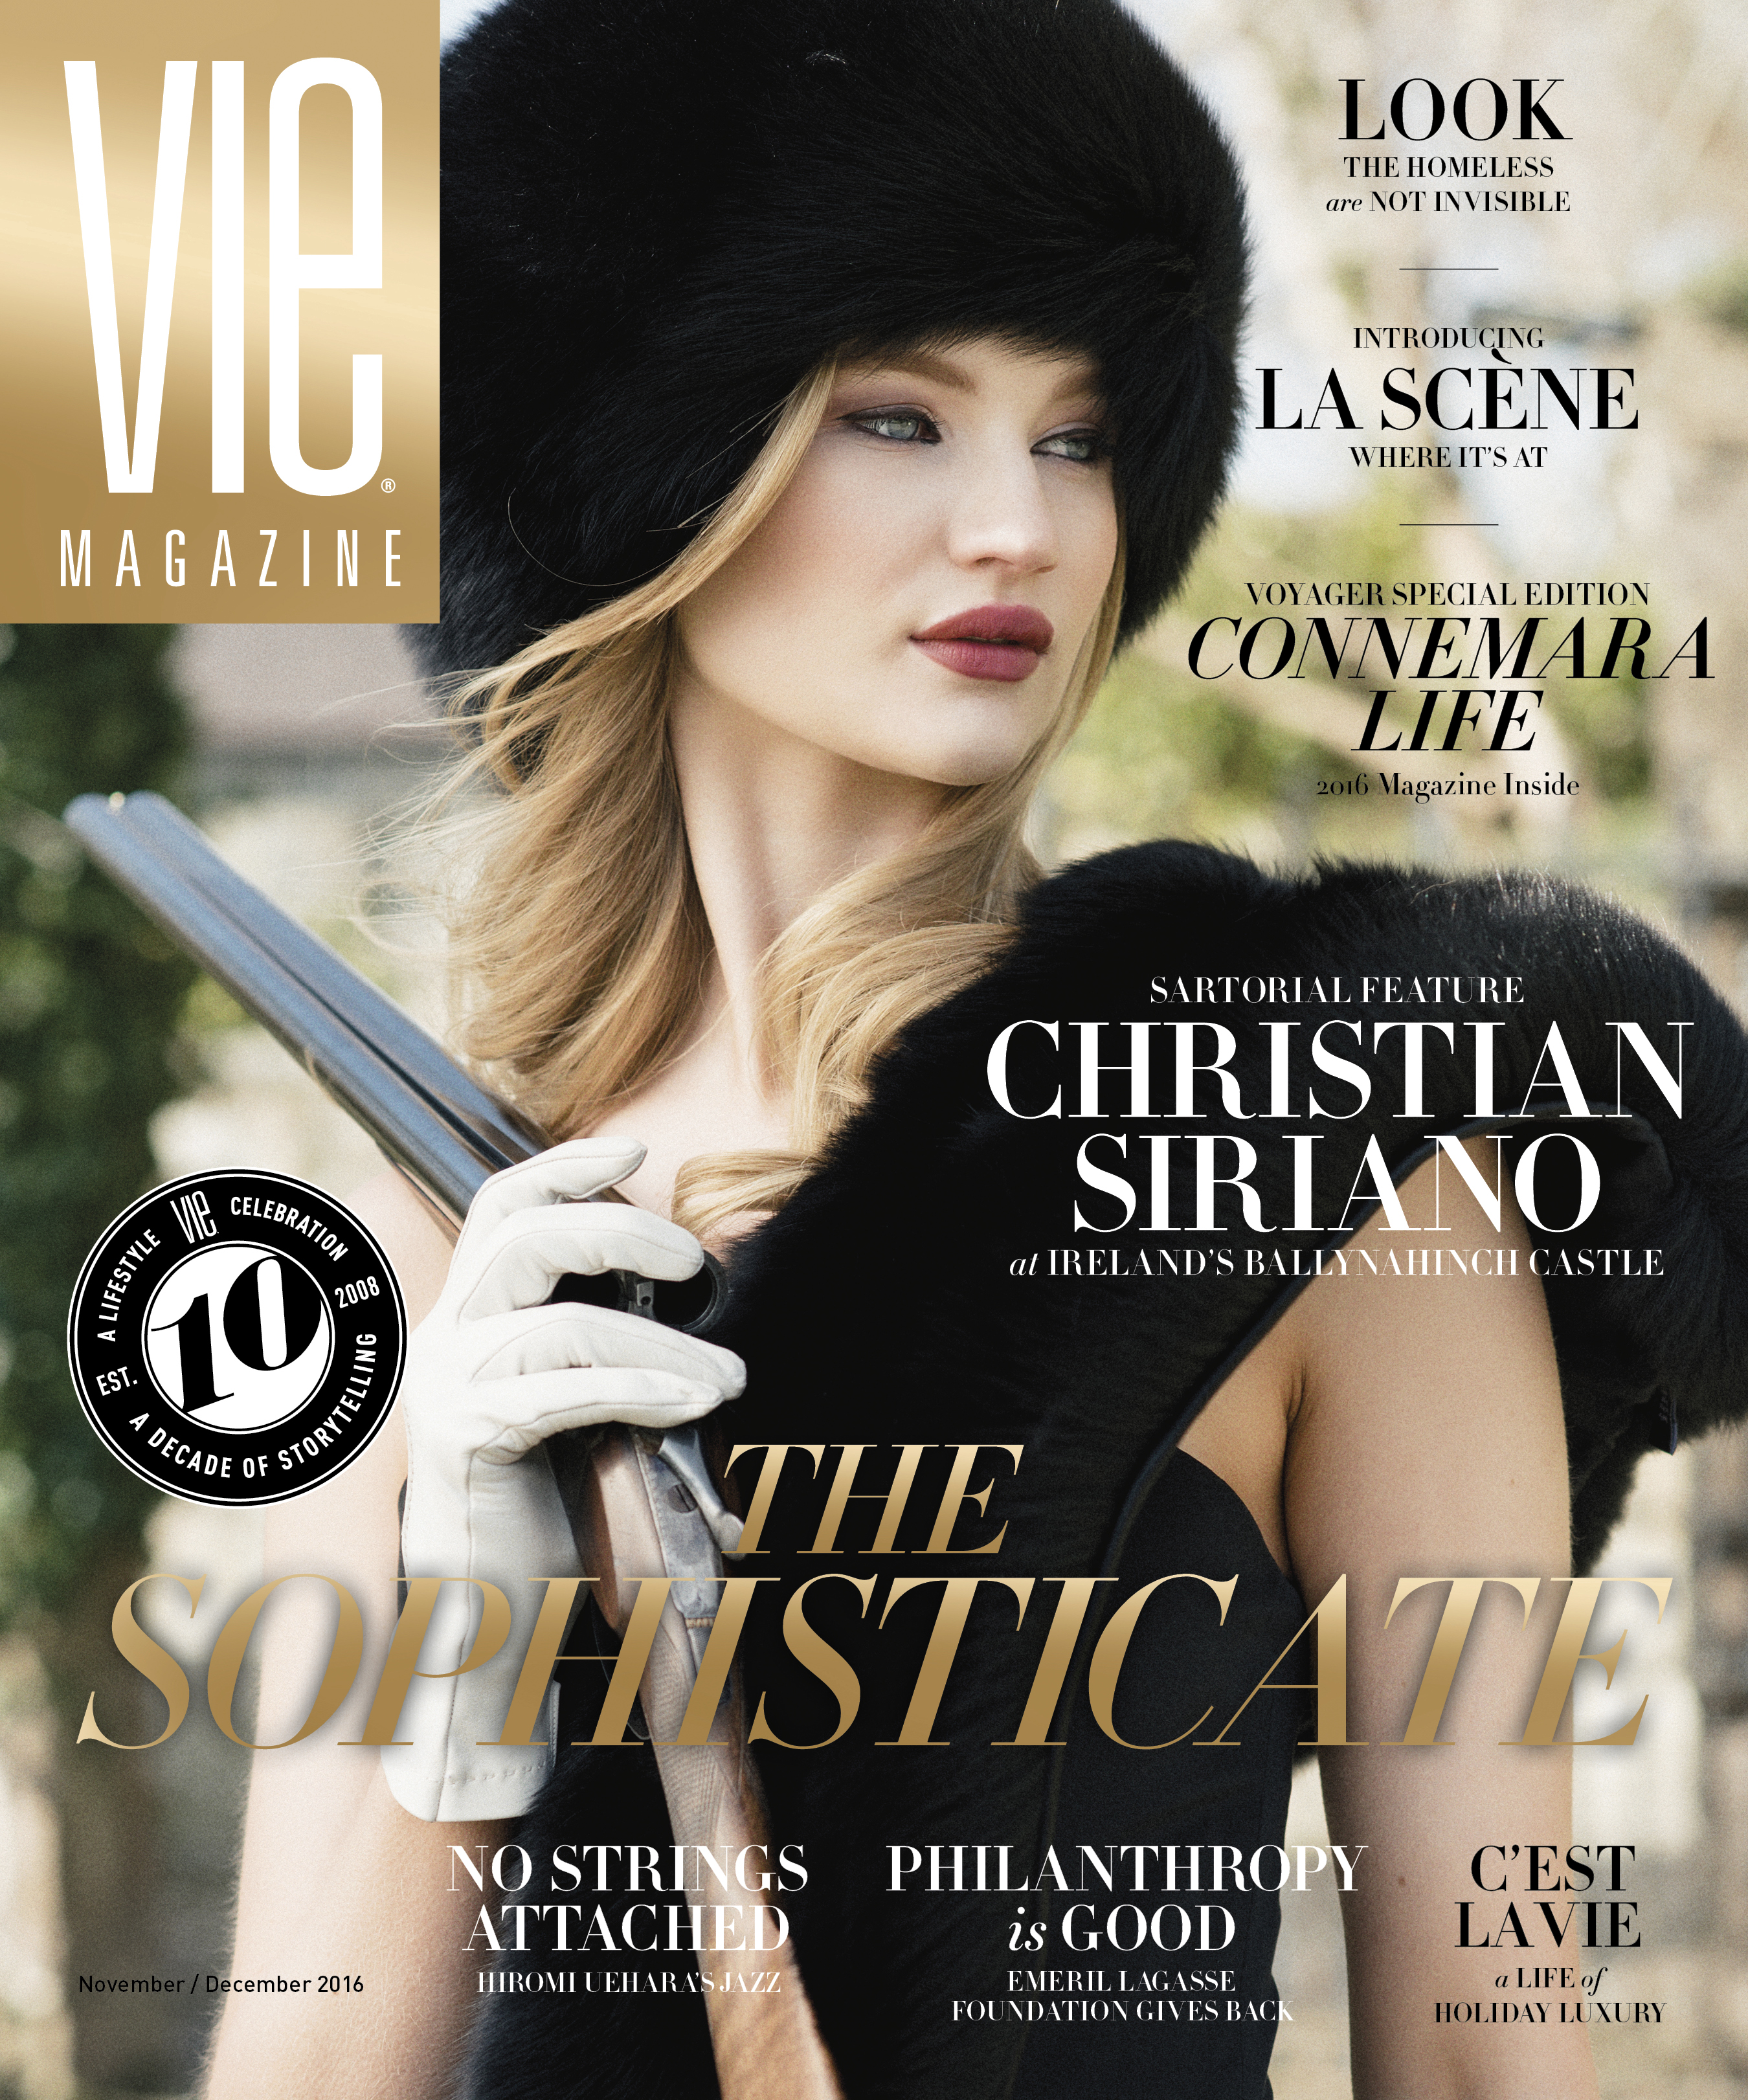 VIE Magazine November 2016 Cover